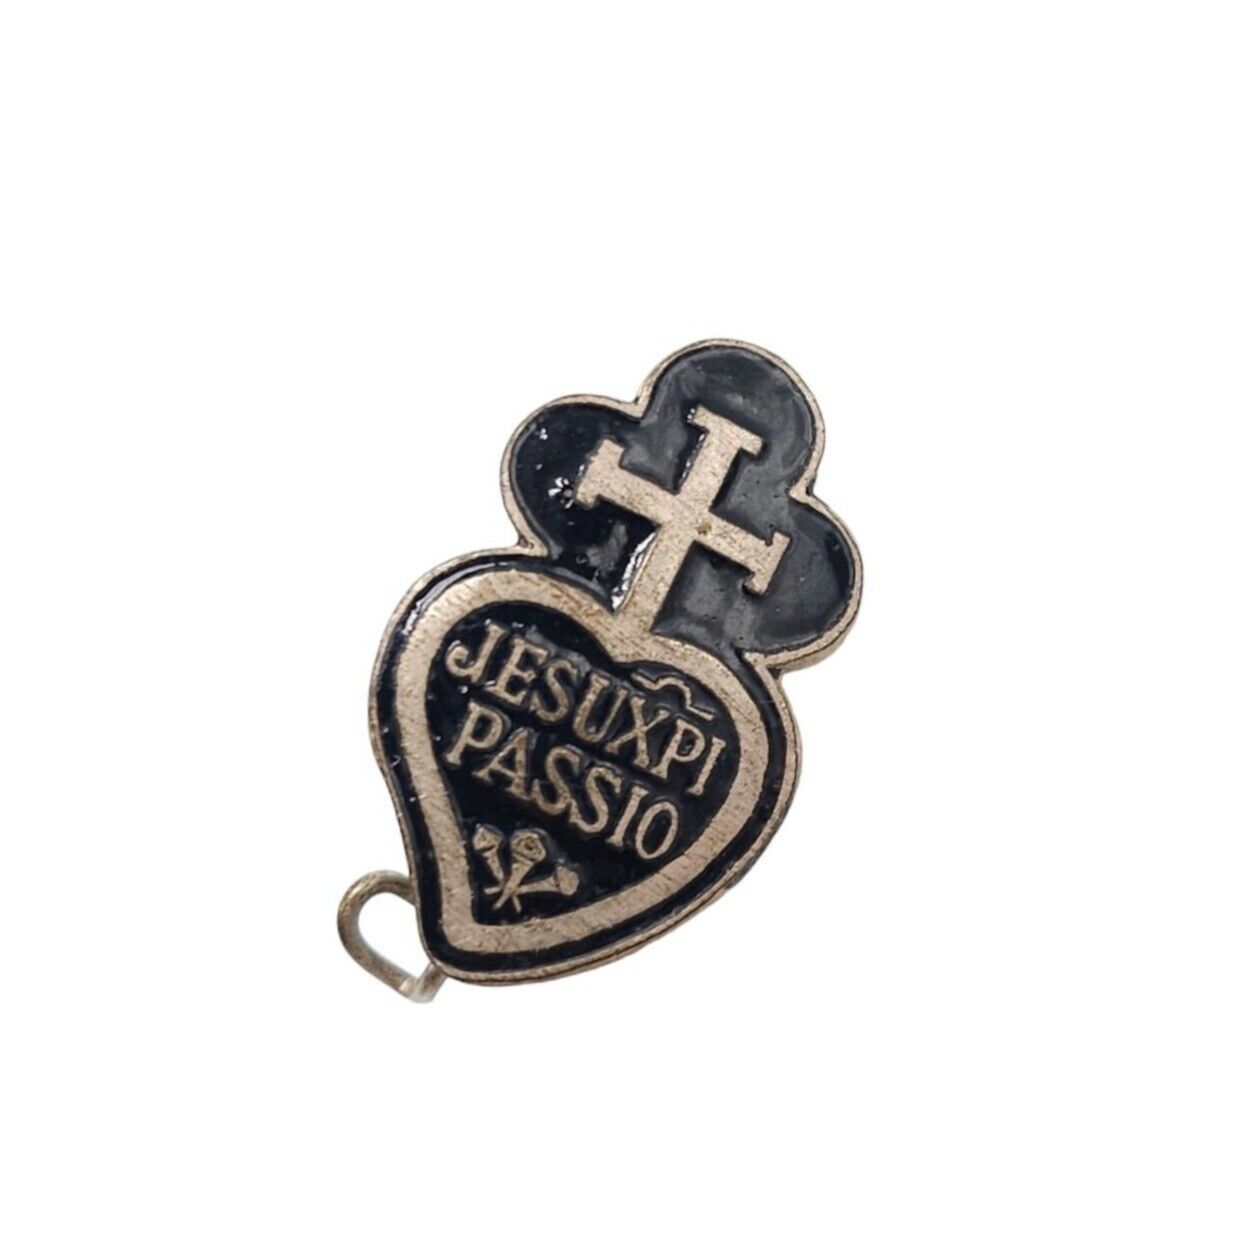 Rare Antique Catholic Passionist's Enamel Cross Lapel Pin 1920s